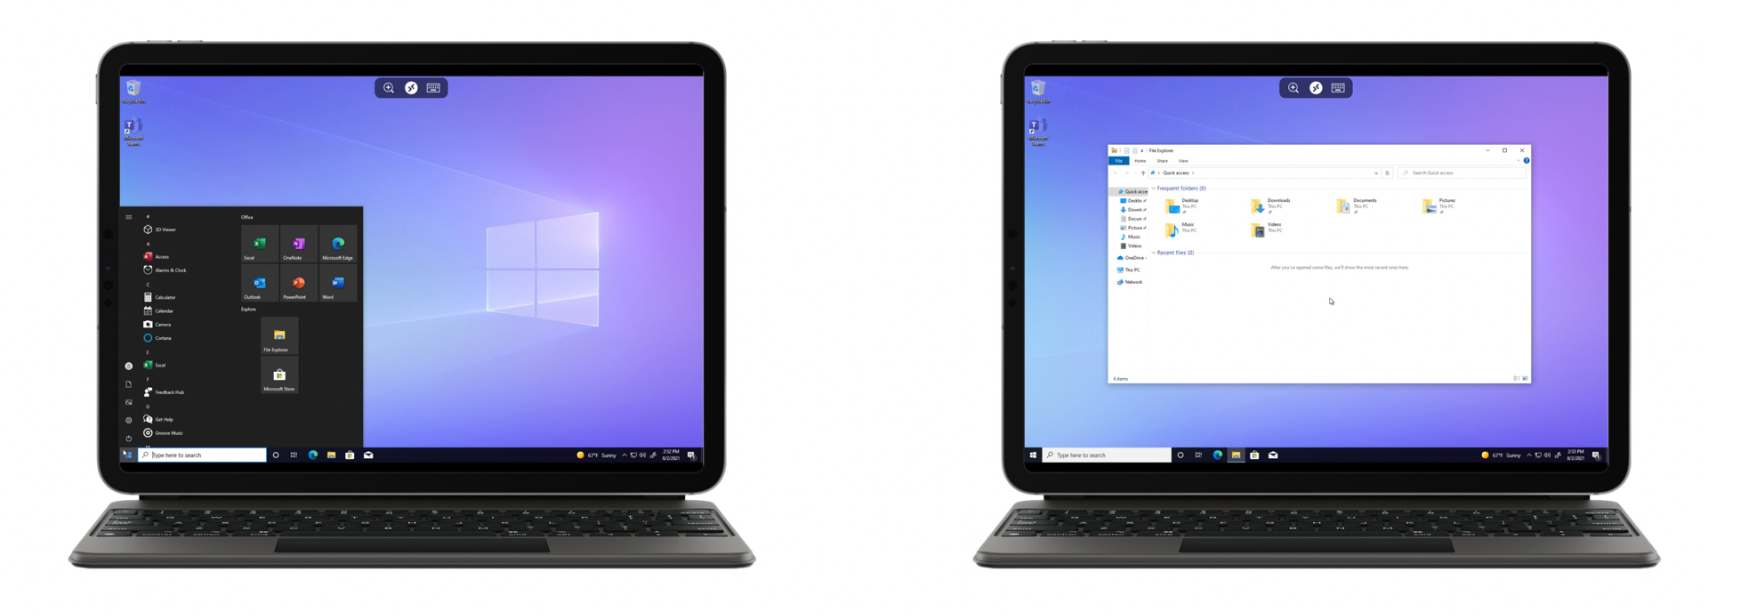 Microsoft официально выпустила облачную Windows 365. Она стоит от 20$ за пользователя и её уже запустили на iPad